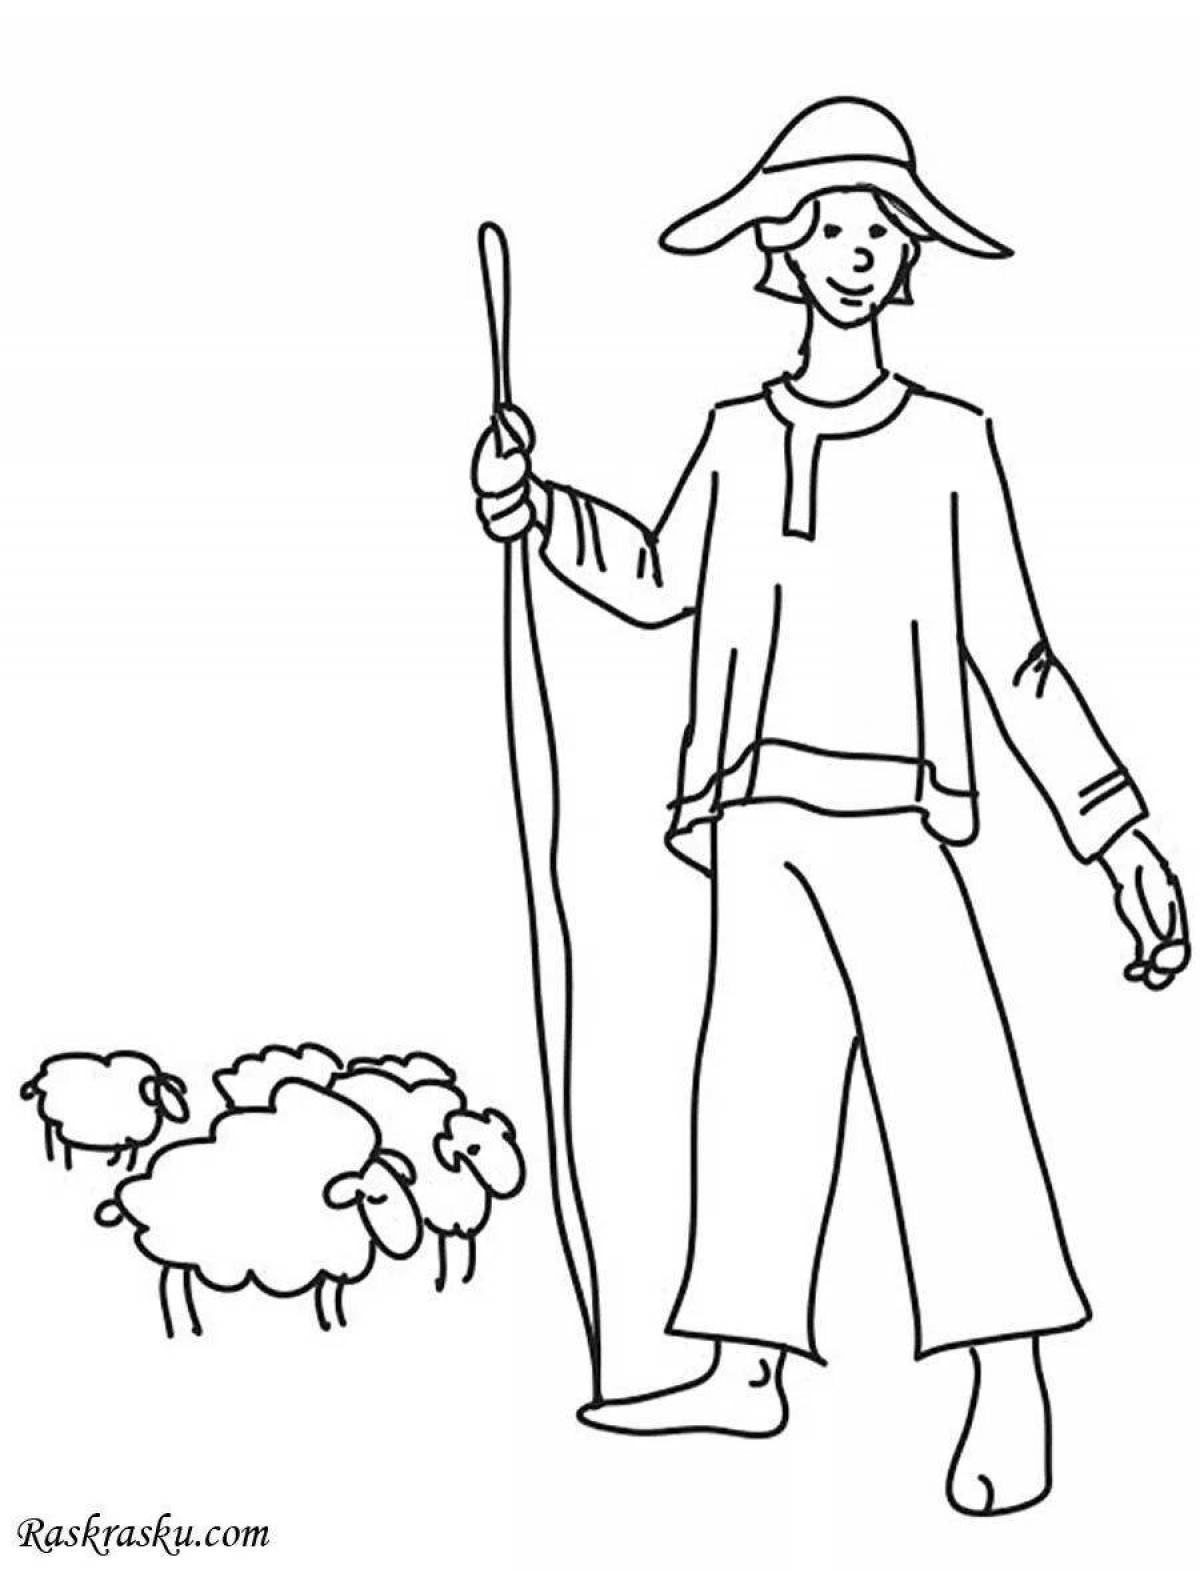 Раскраска яркая овчарка